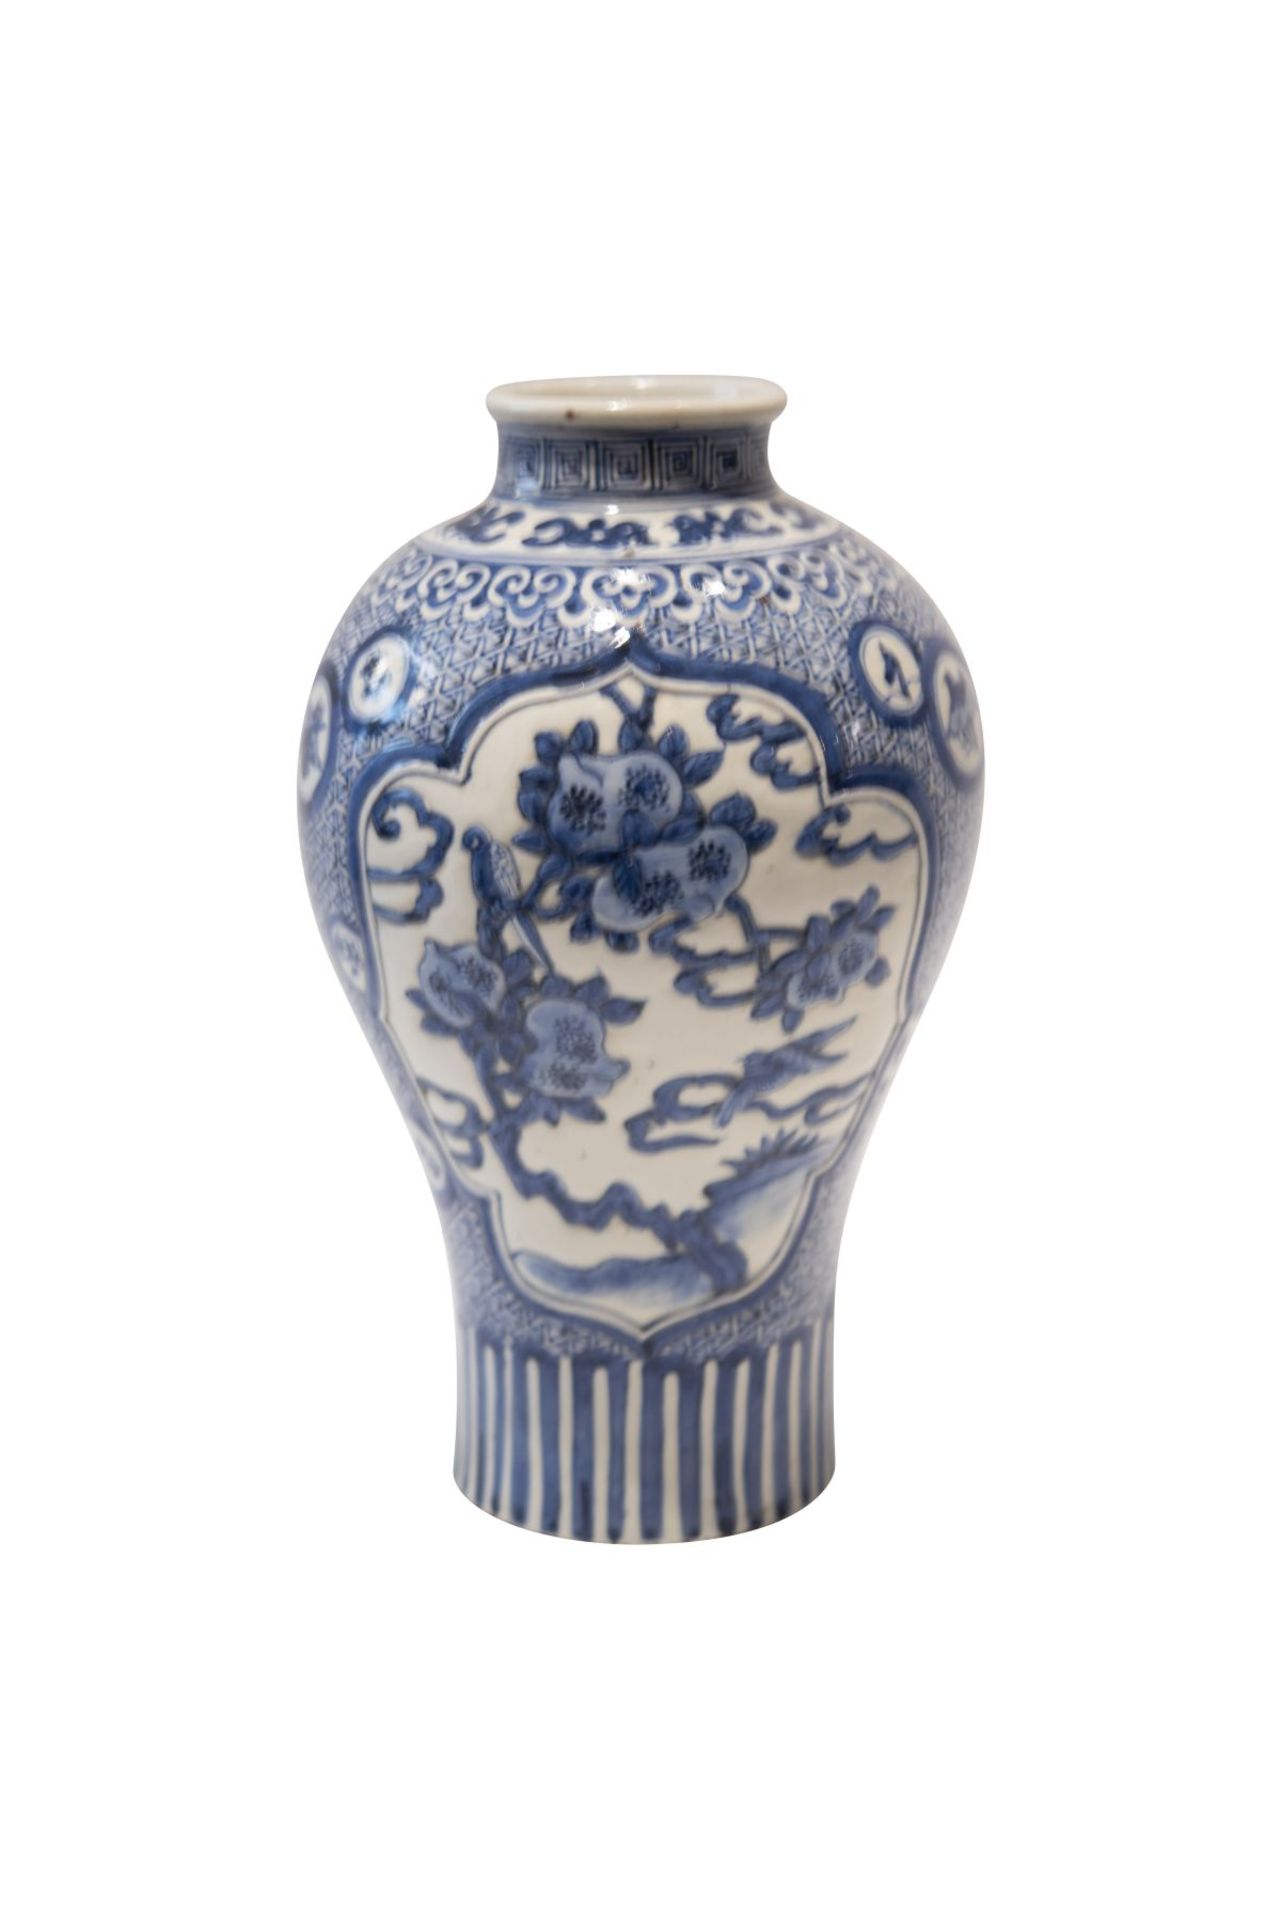 Blau-weisse VaseBlau-weise Vase, bauchige Form nach schmal auslaufend, reich bemalt mit Vögeln und